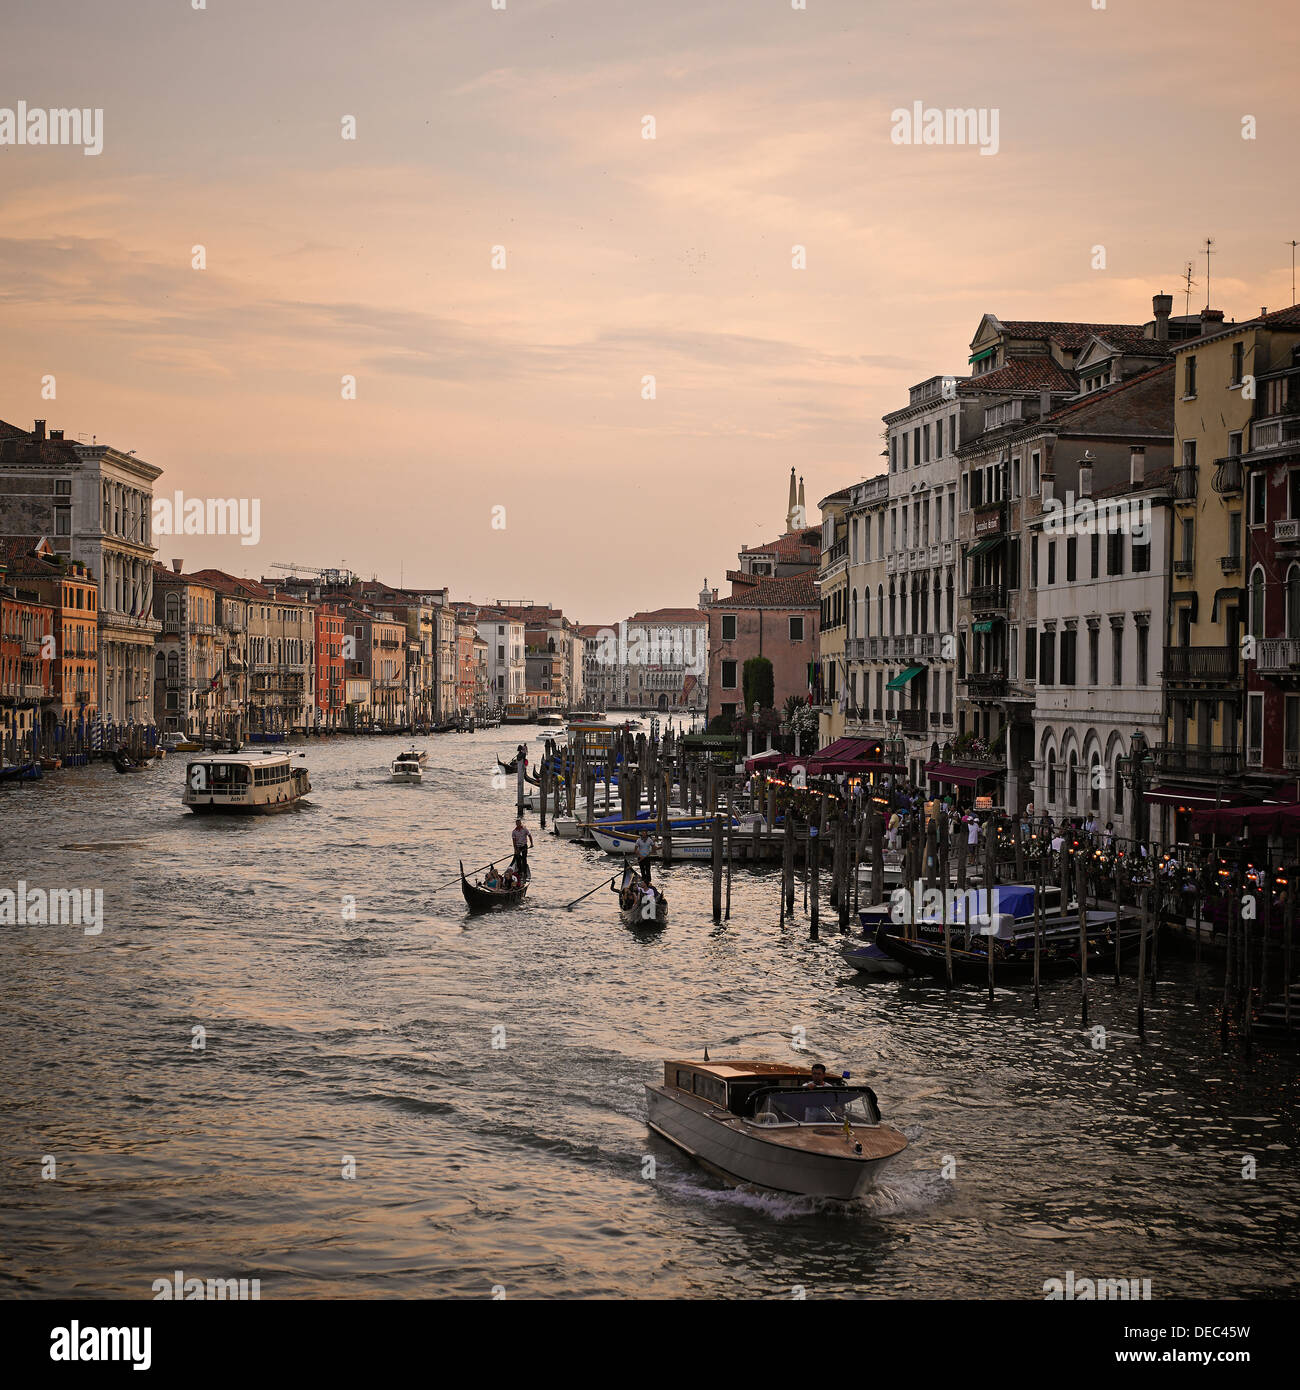 View at dusk from The Rialto Bridge. Venice, Italy, Europe. Stock Photo